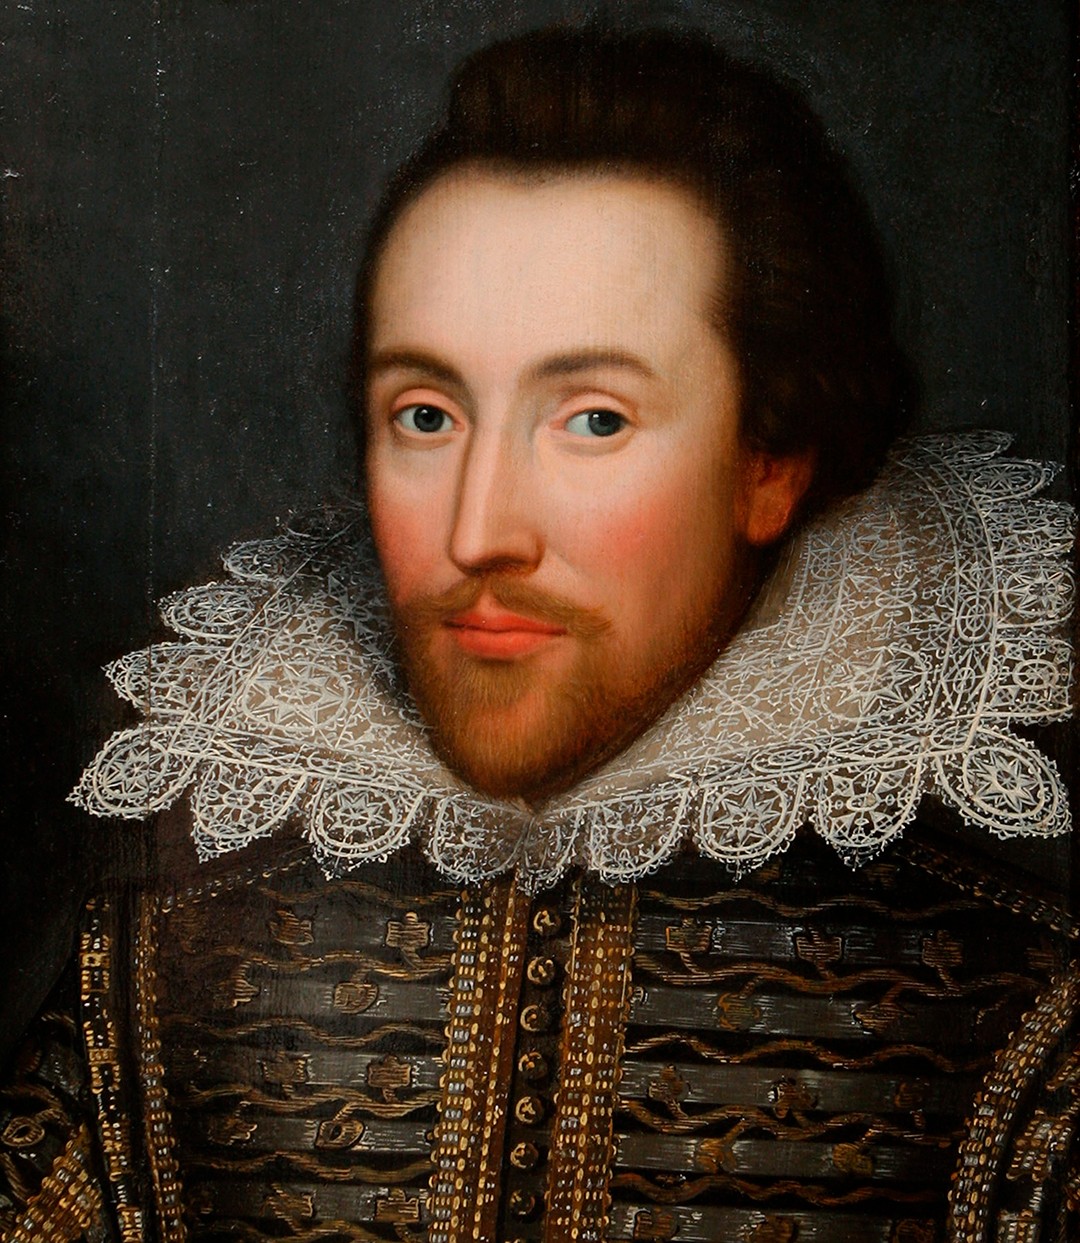 Retrato de William Shakespeare, que morreu em 1616, aos 52 anos (Foto: Getty Images)